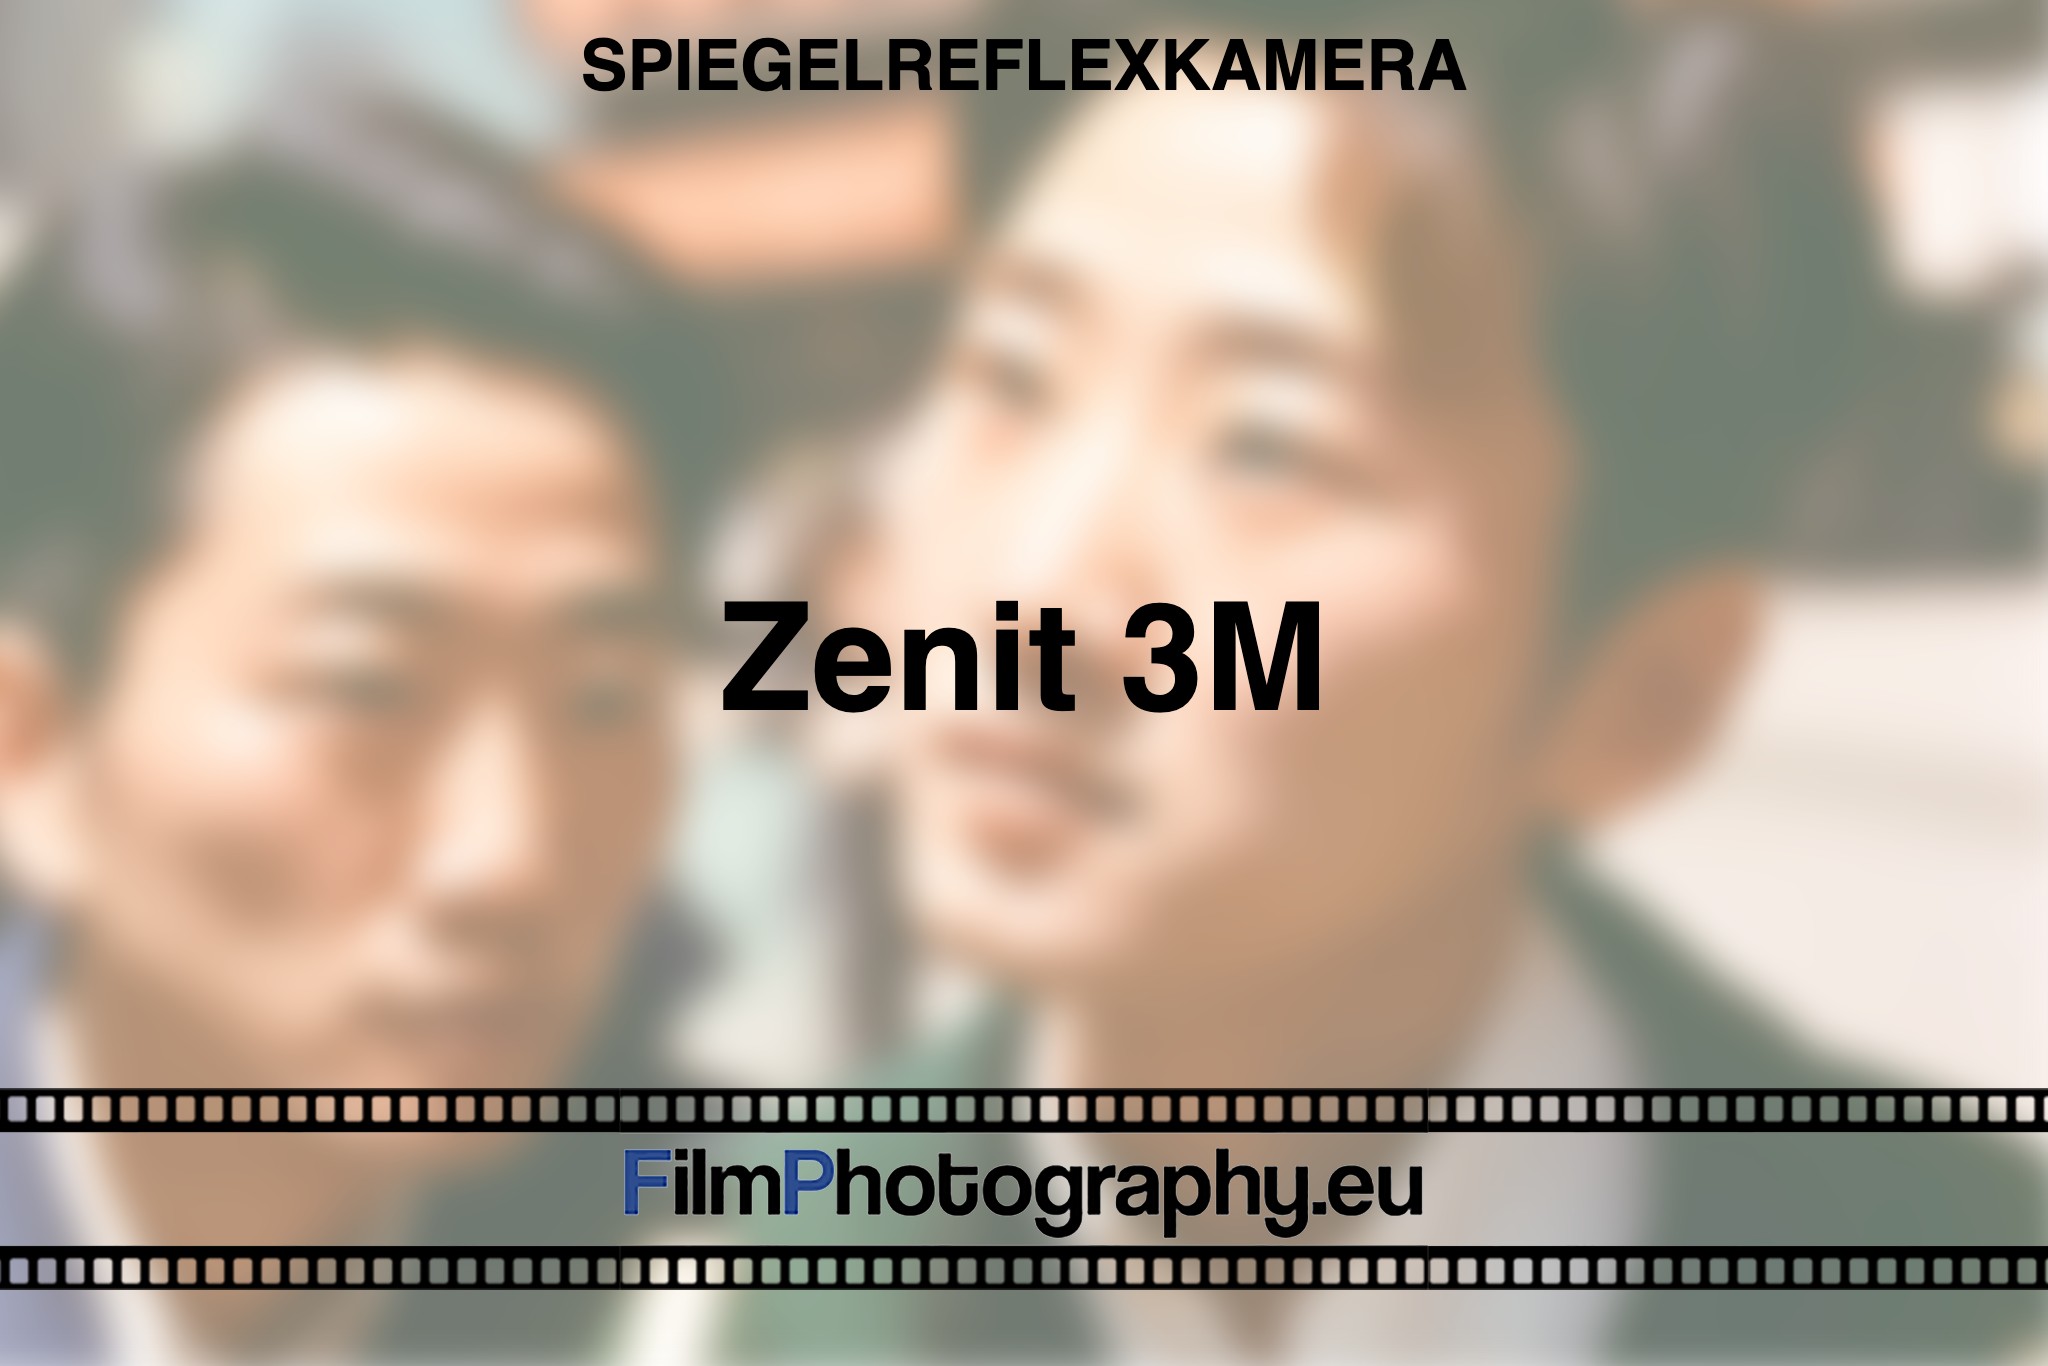 zenit-3m-spiegelreflexkamera-bnv